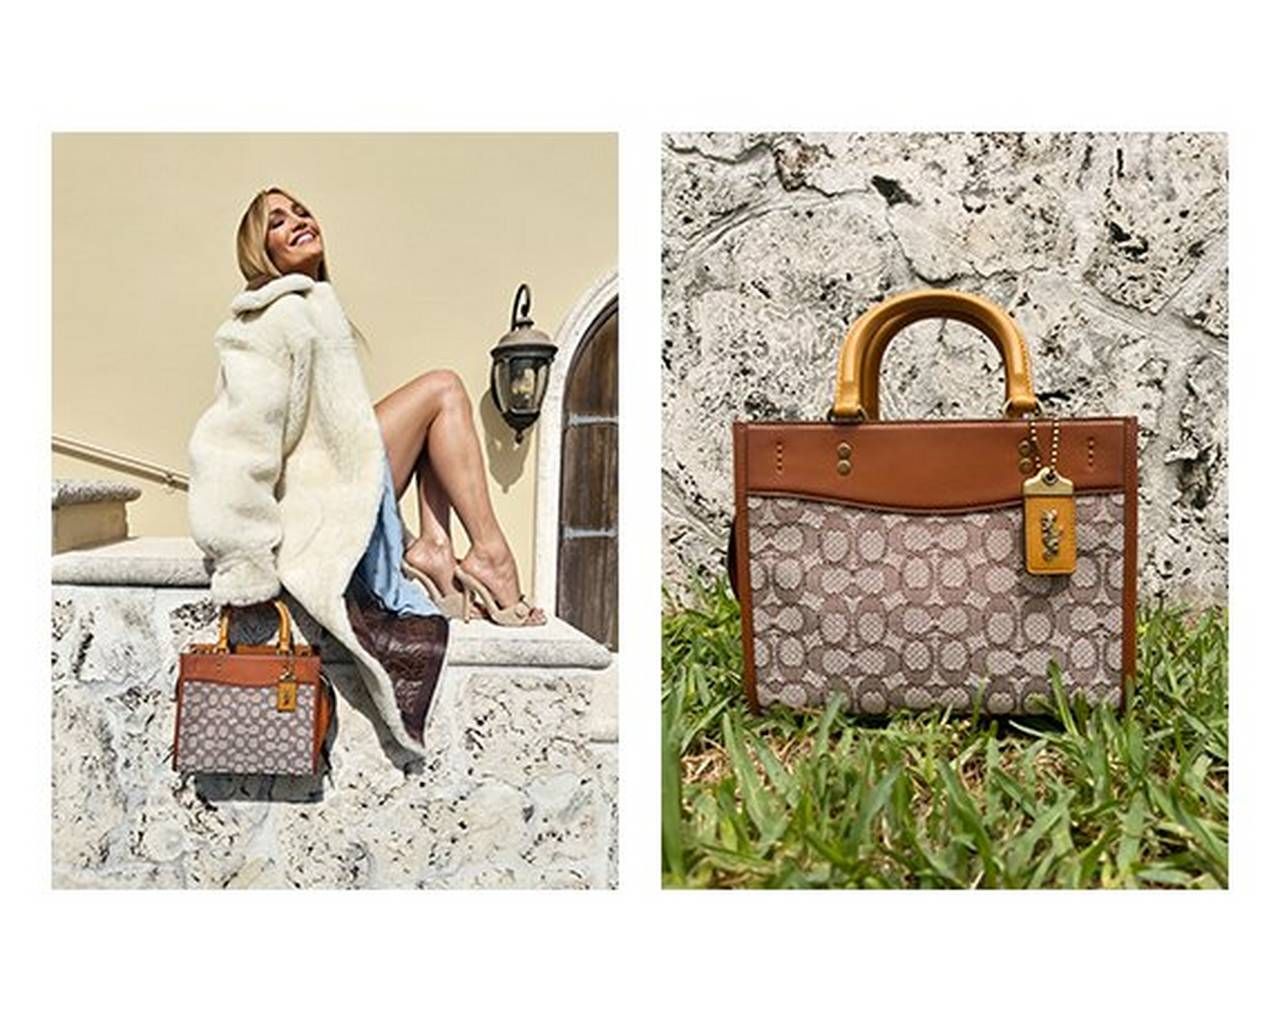 Odon Duffle Bag - Unconventional, Lauren Ross Design, Art auction, Handbag auction, Online auctions, Designer Handbags, Luxury Handbags, Designer  Luggage